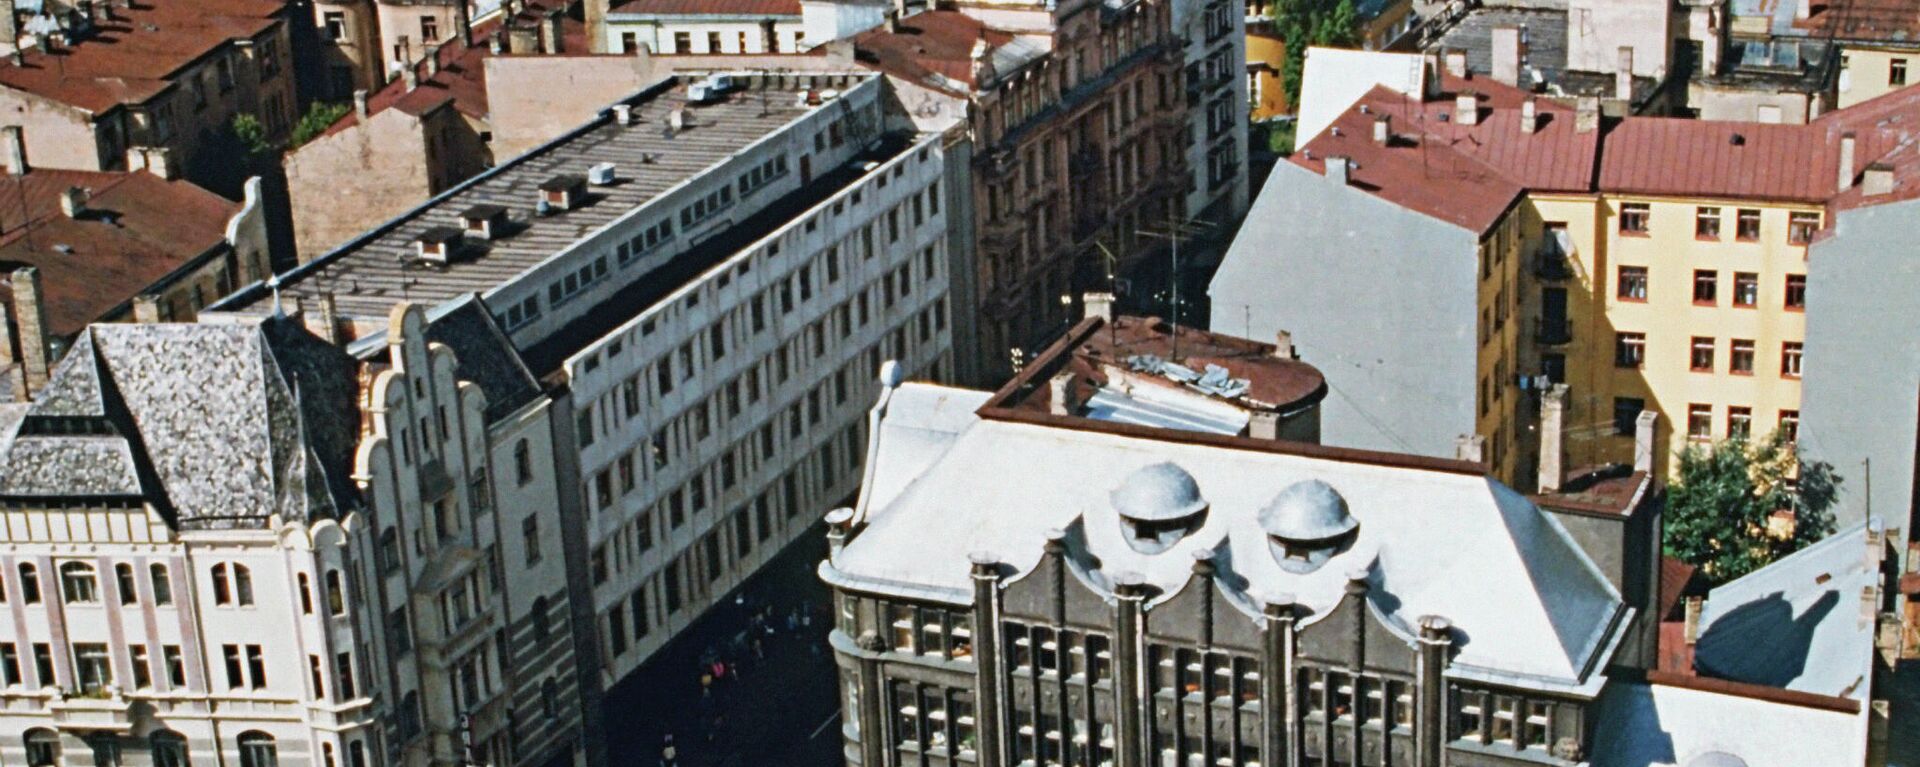 Панорама города Рига в Латвии, 1990 год - Sputnik Латвия, 1920, 21.10.2021